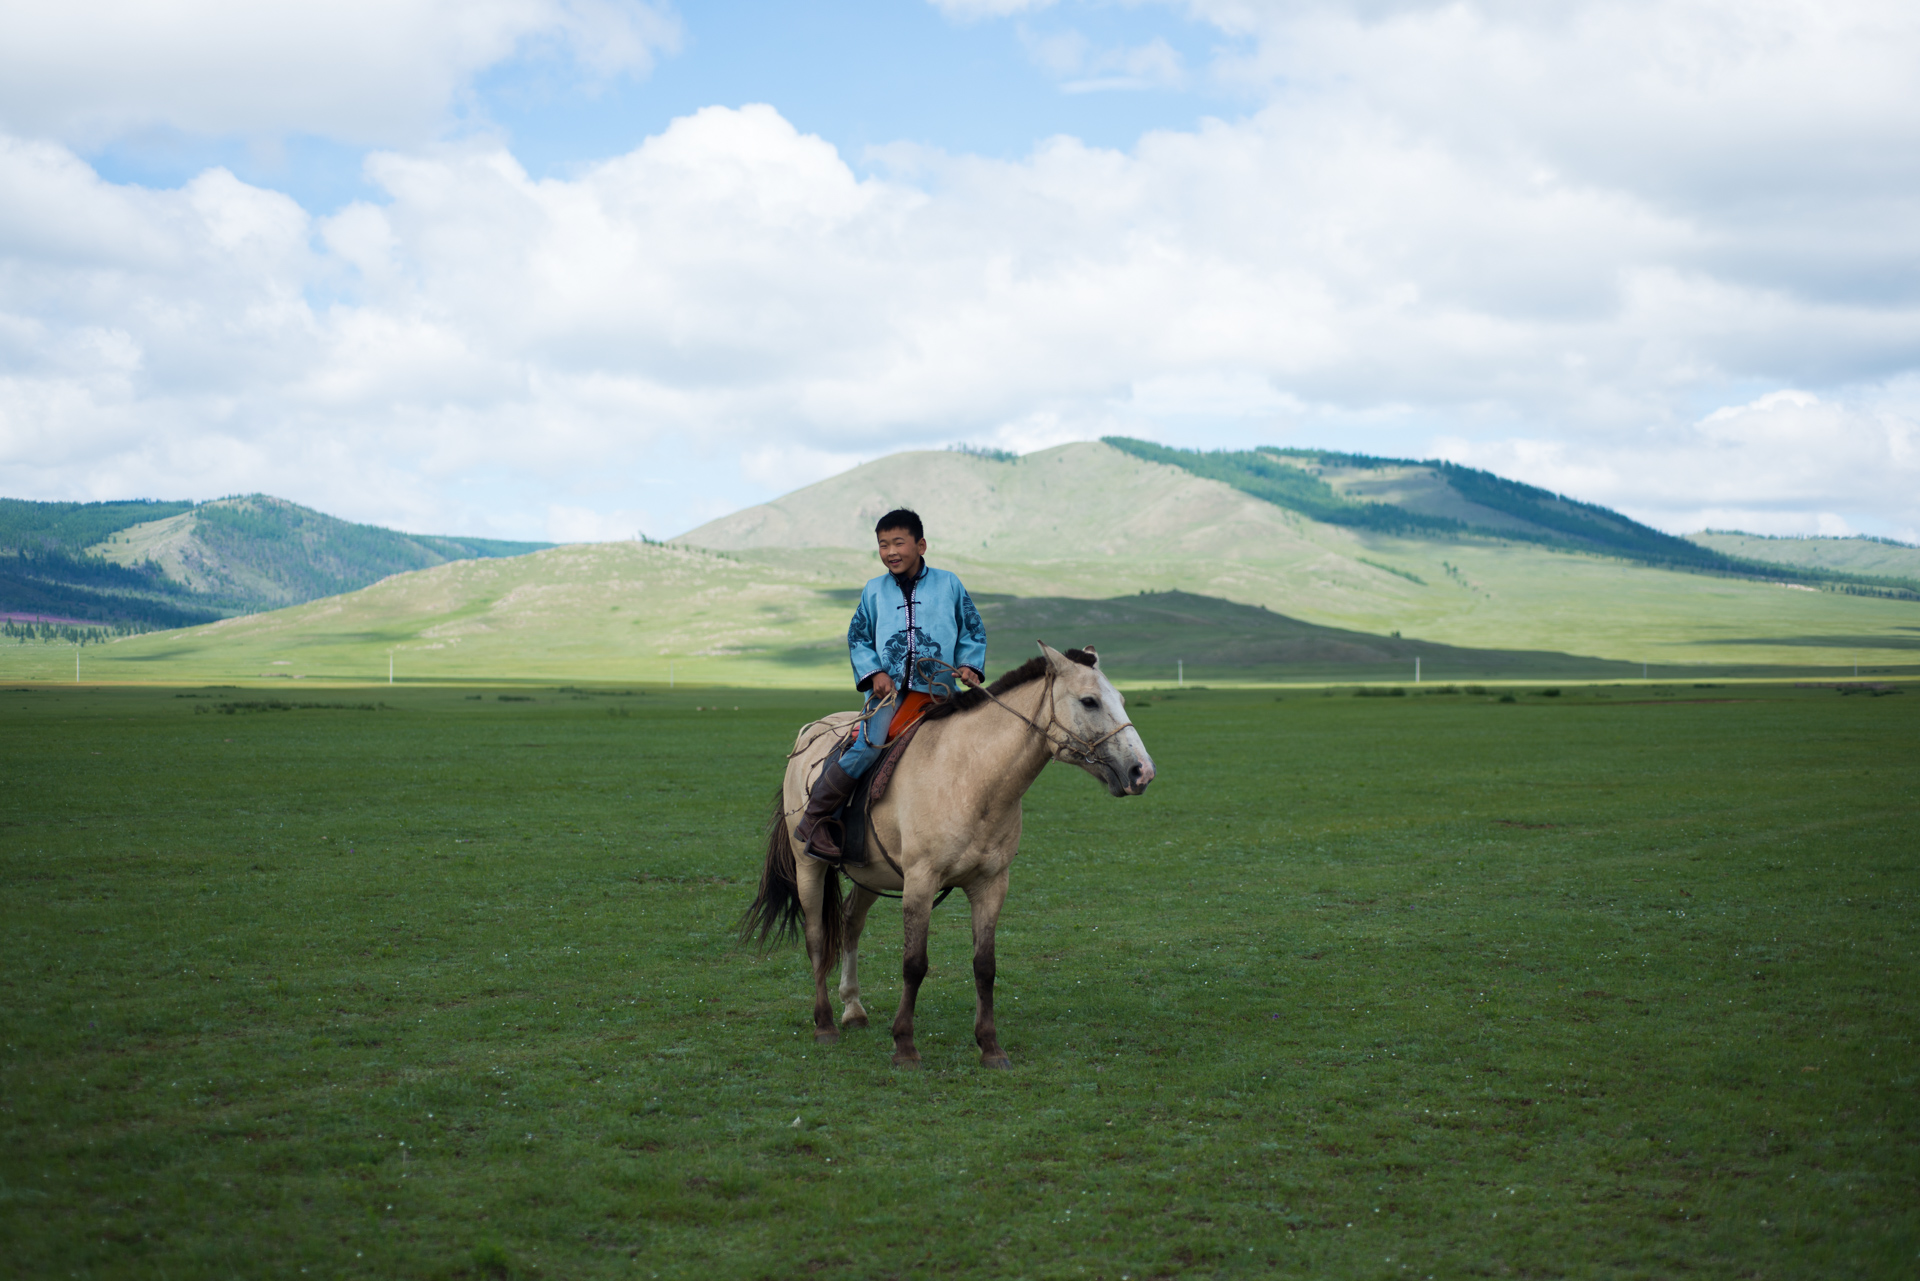 150802_482.jpg : 몽골 학습탐사 2진 사진 8월2일_2 .